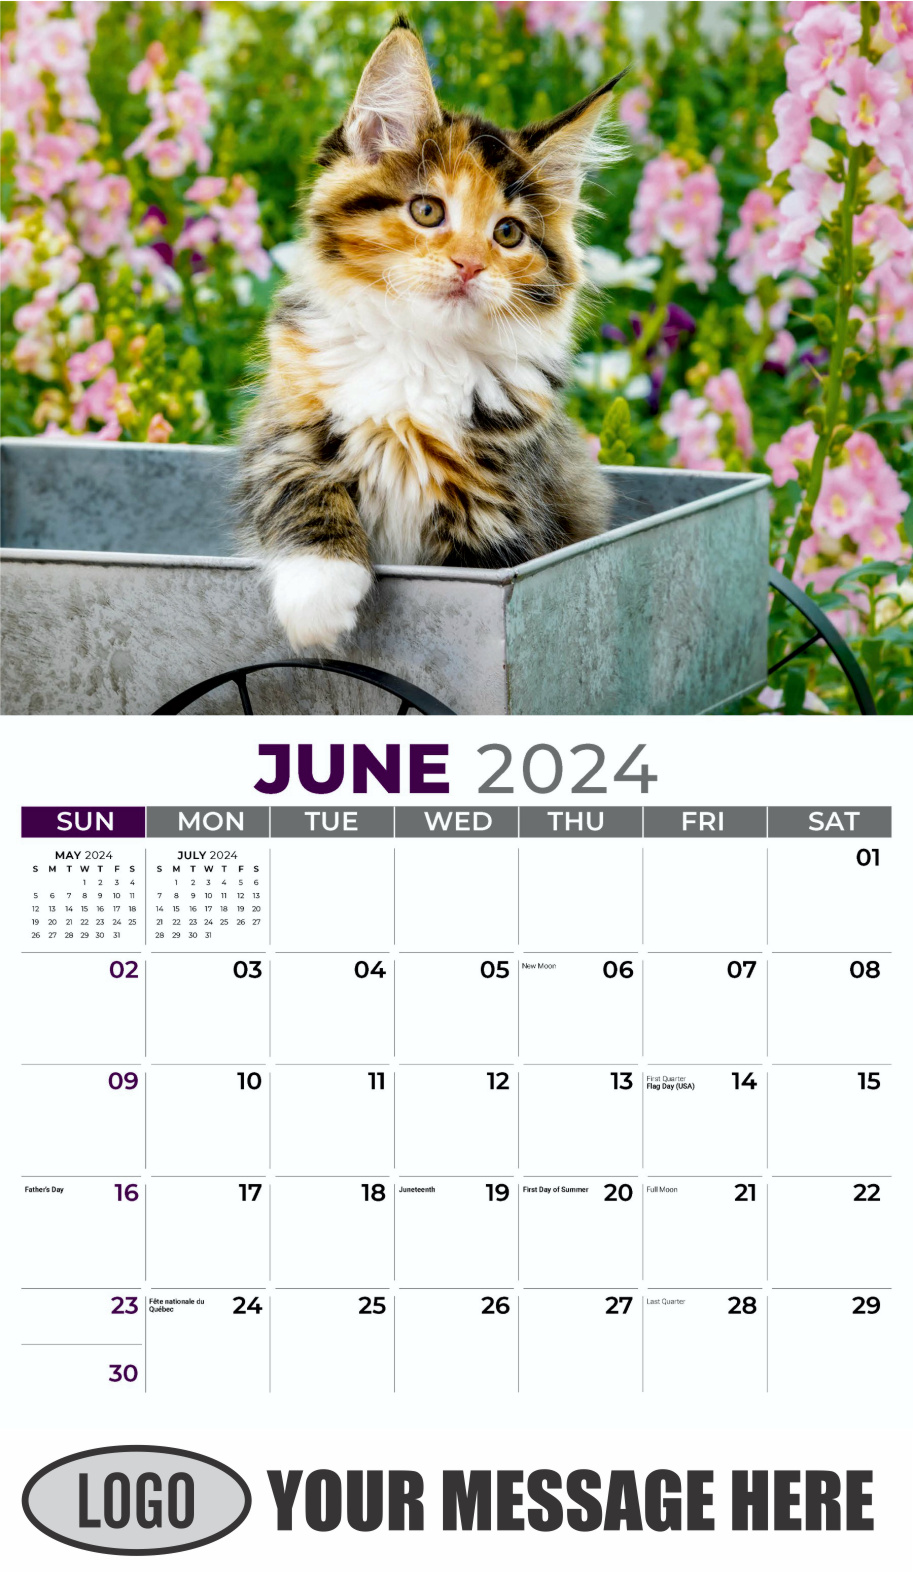 Kittens 2024 Business Promo Wall Calendar - June